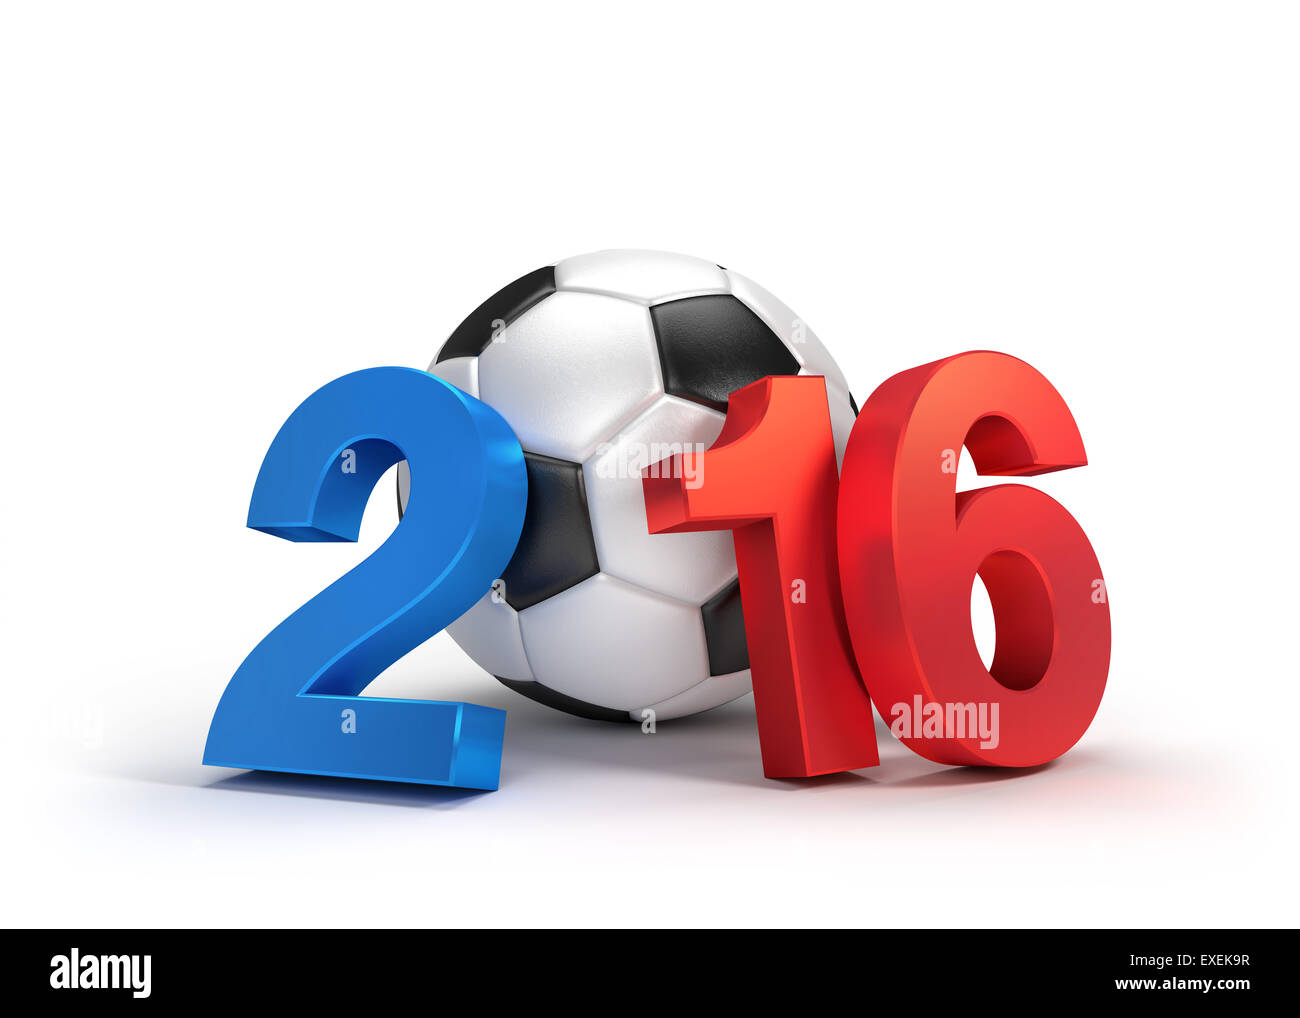 2016 Jahr illustriert mit einem klassischen Fußball, farbige französische Fahne, isoliert auf weiss Stockfoto